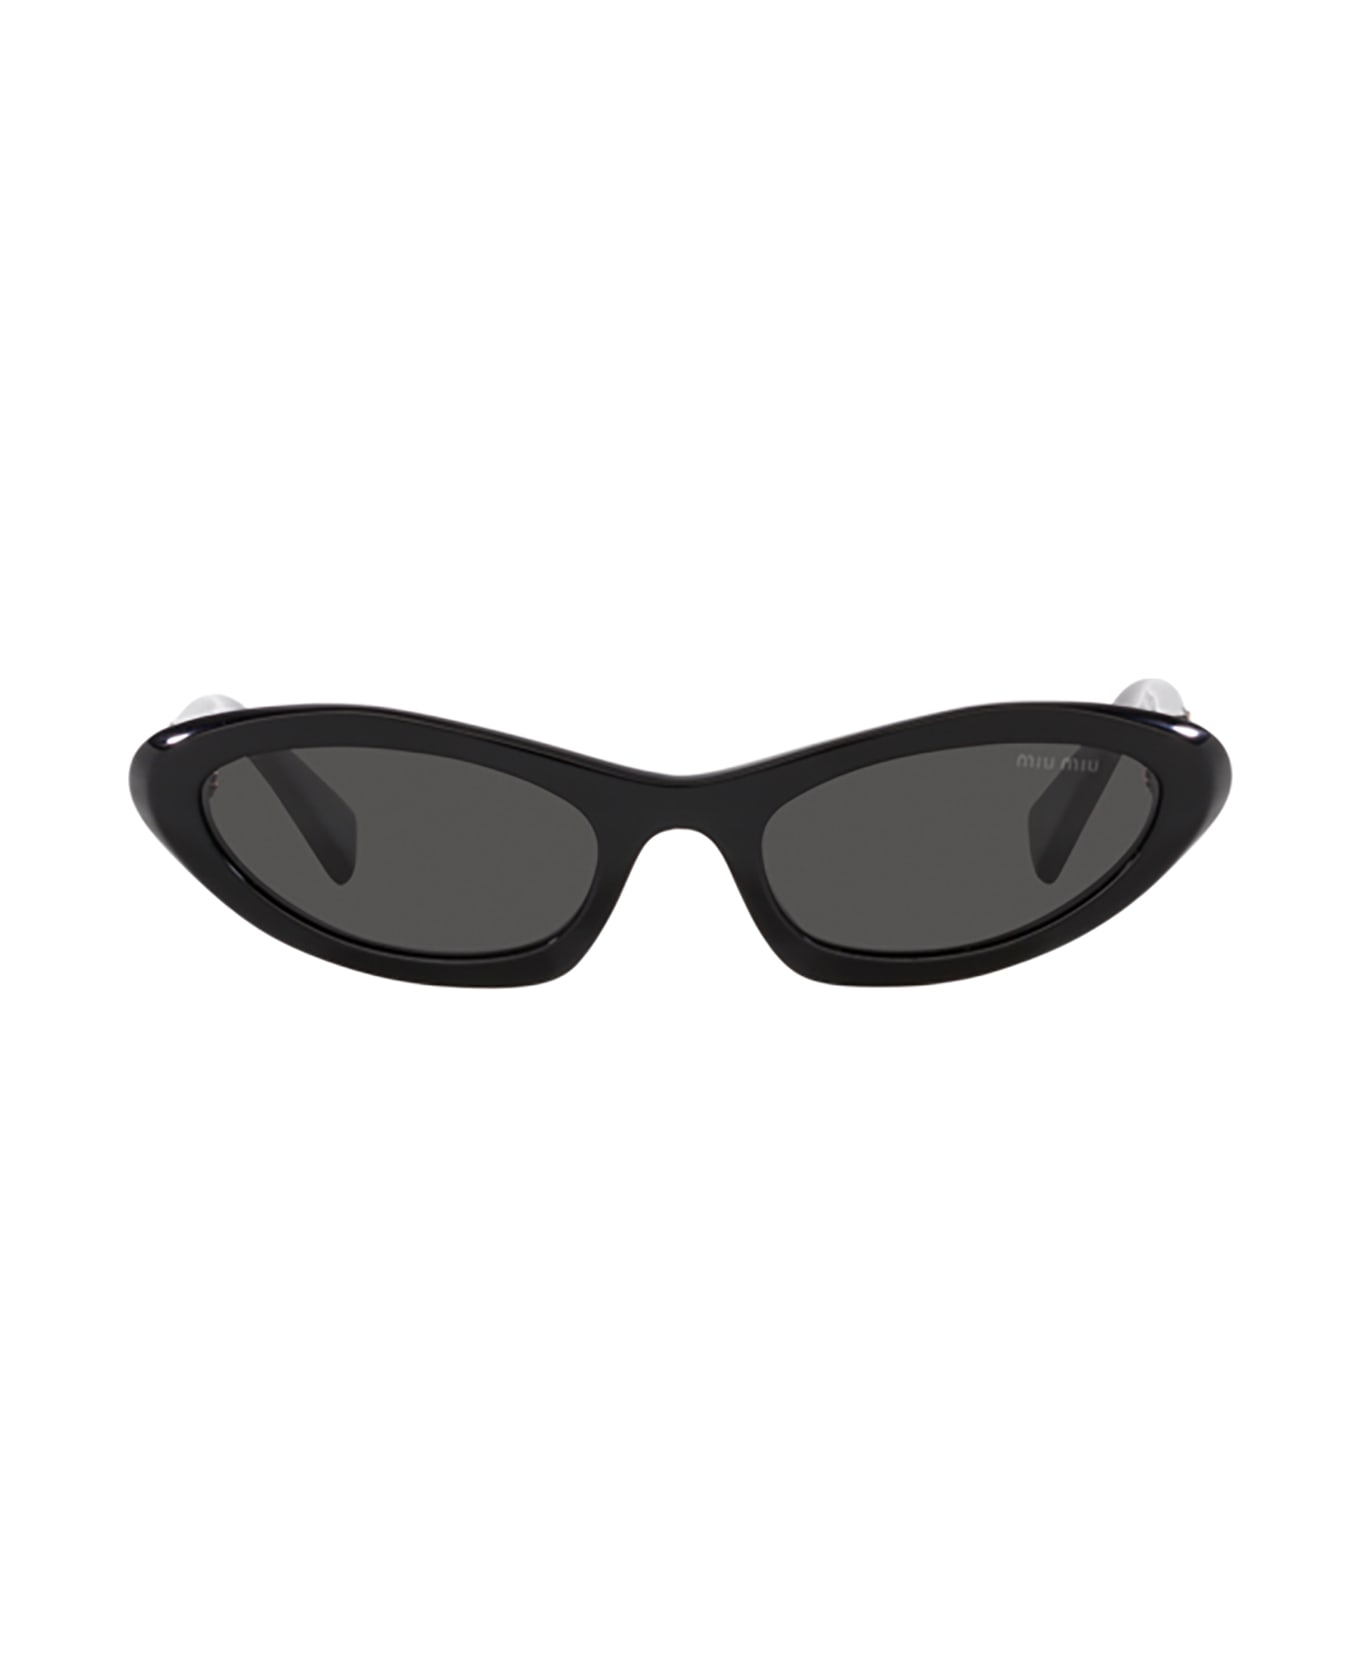 Miu Miu Eyewear Mu 09ys Black Sunglasses - Black